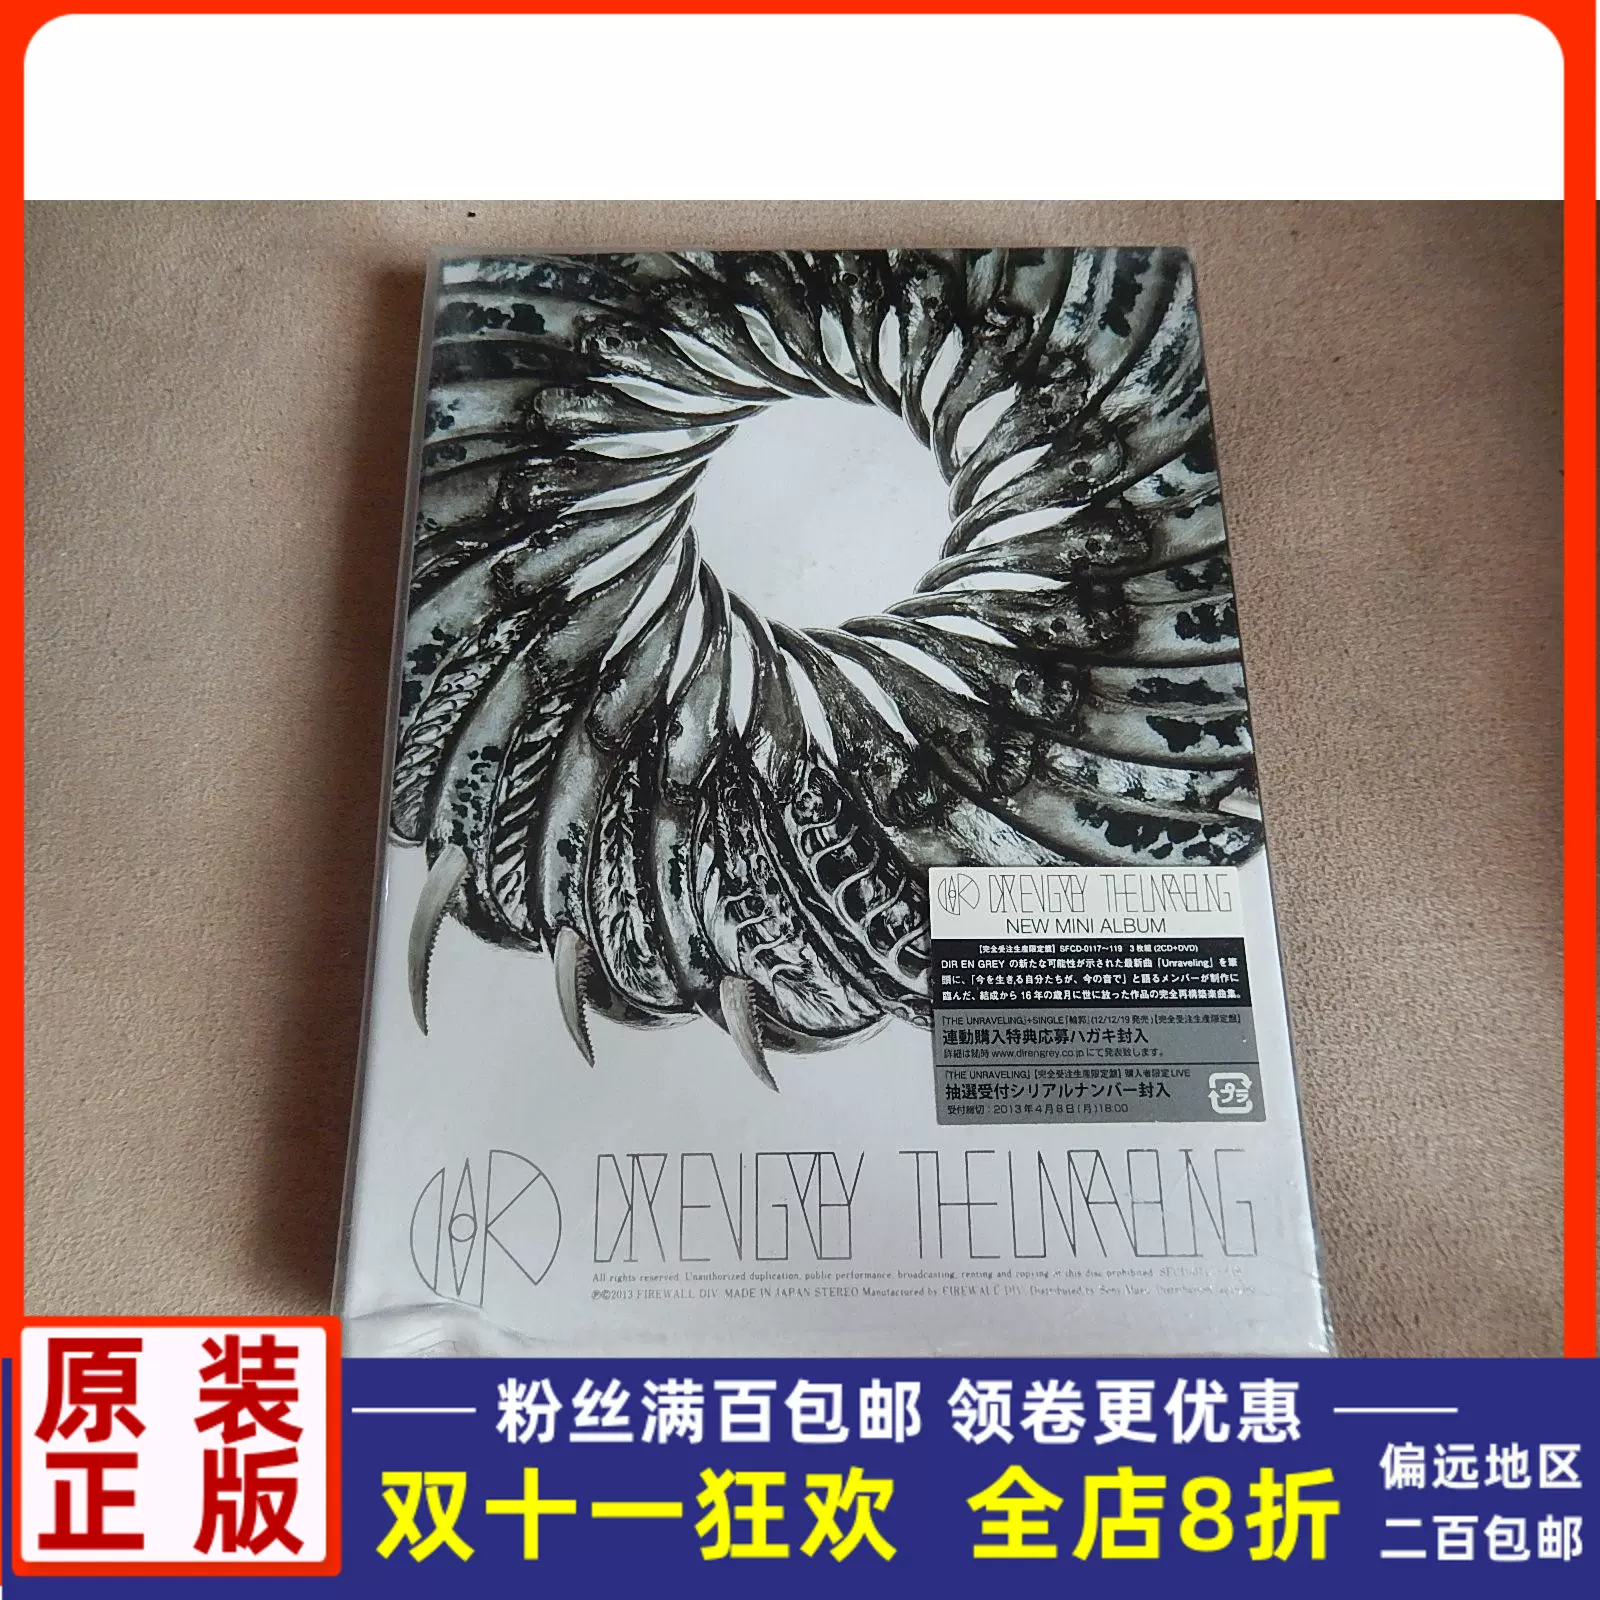 全新正版2CD+DVD摇滚乐队灰色银币DIR EN GREY UNRAVELING 限定-Taobao